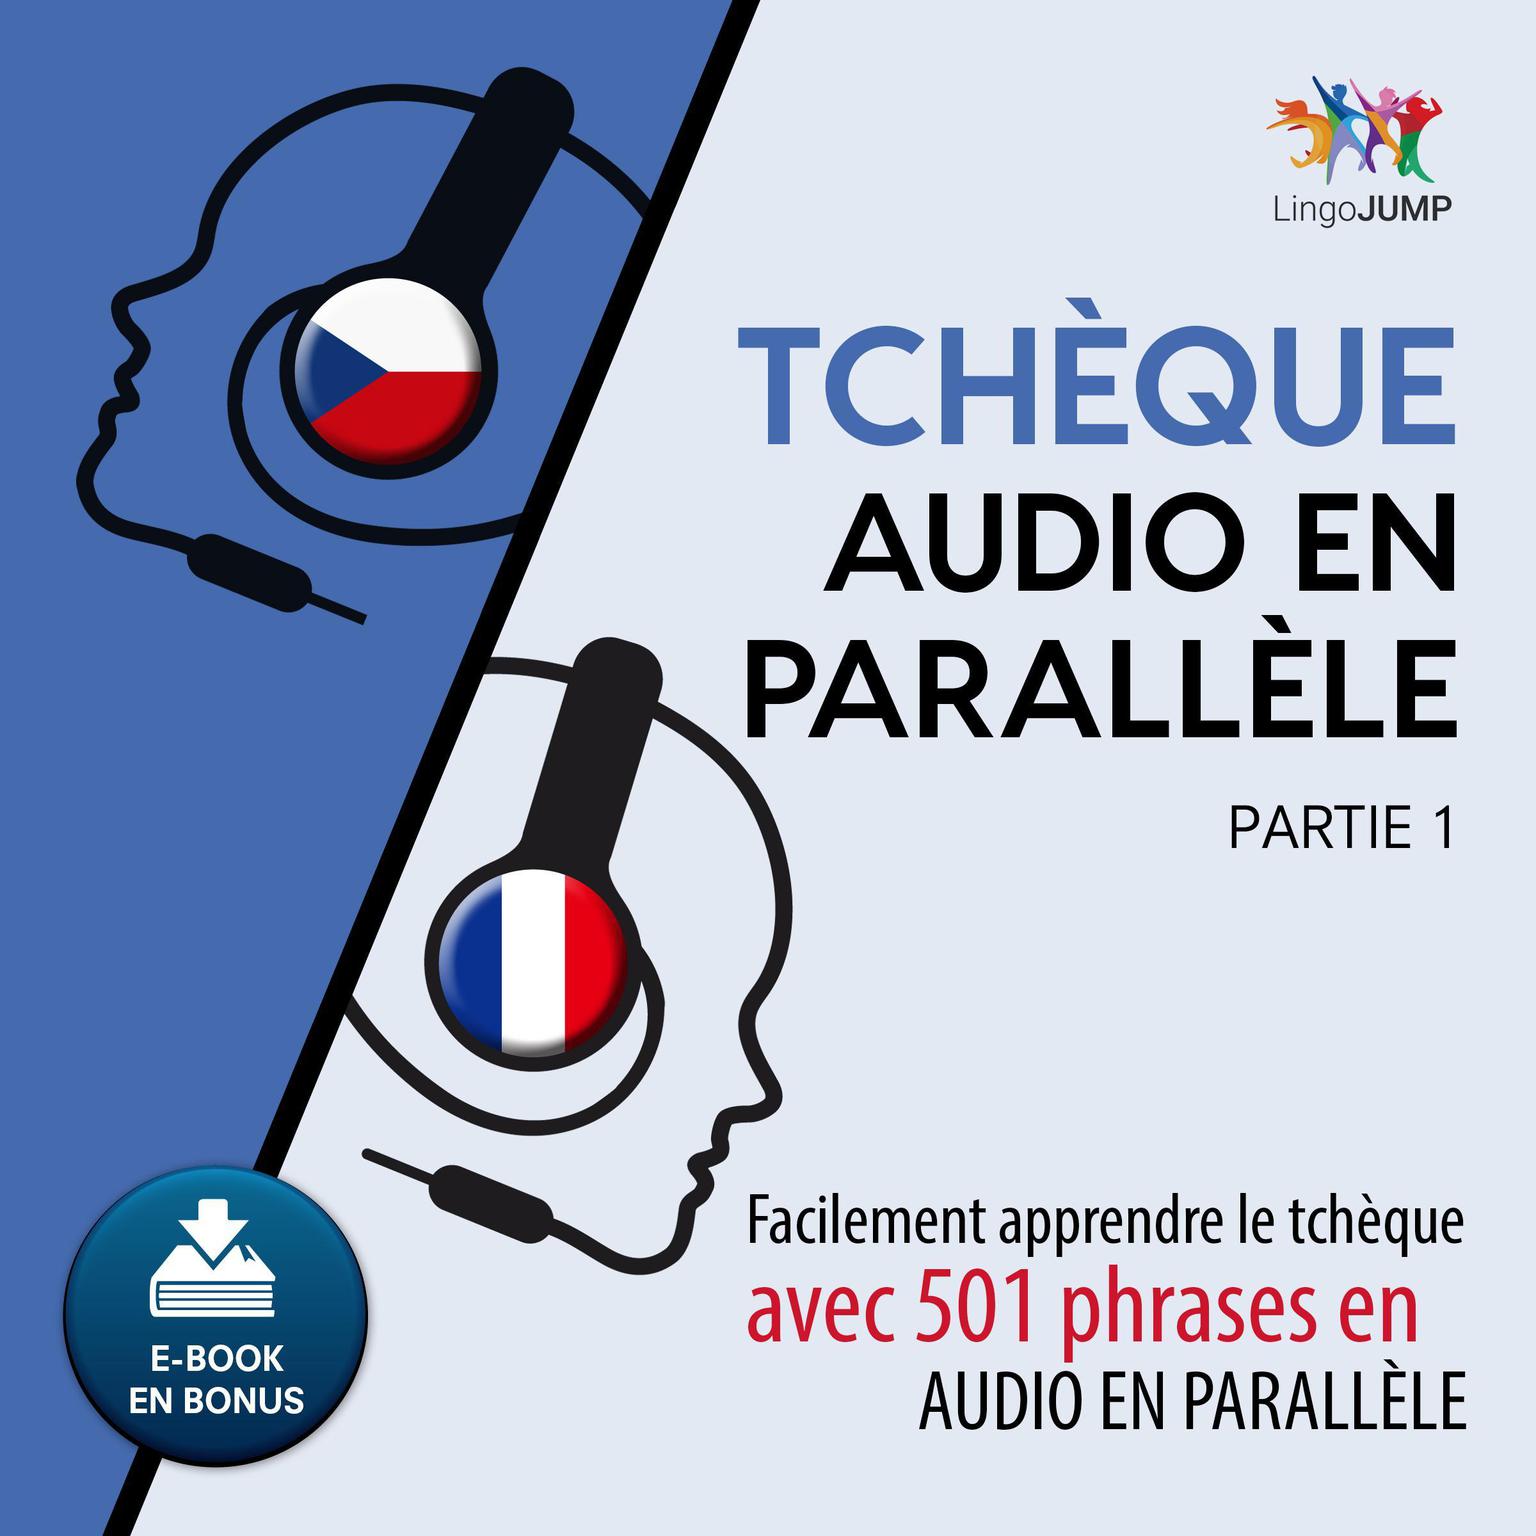 Tchque audio en parallèle - Facilement apprendre letchqueavec 501 phrases en audio en parallle - Partie 1 Audiobook, by Lingo Jump